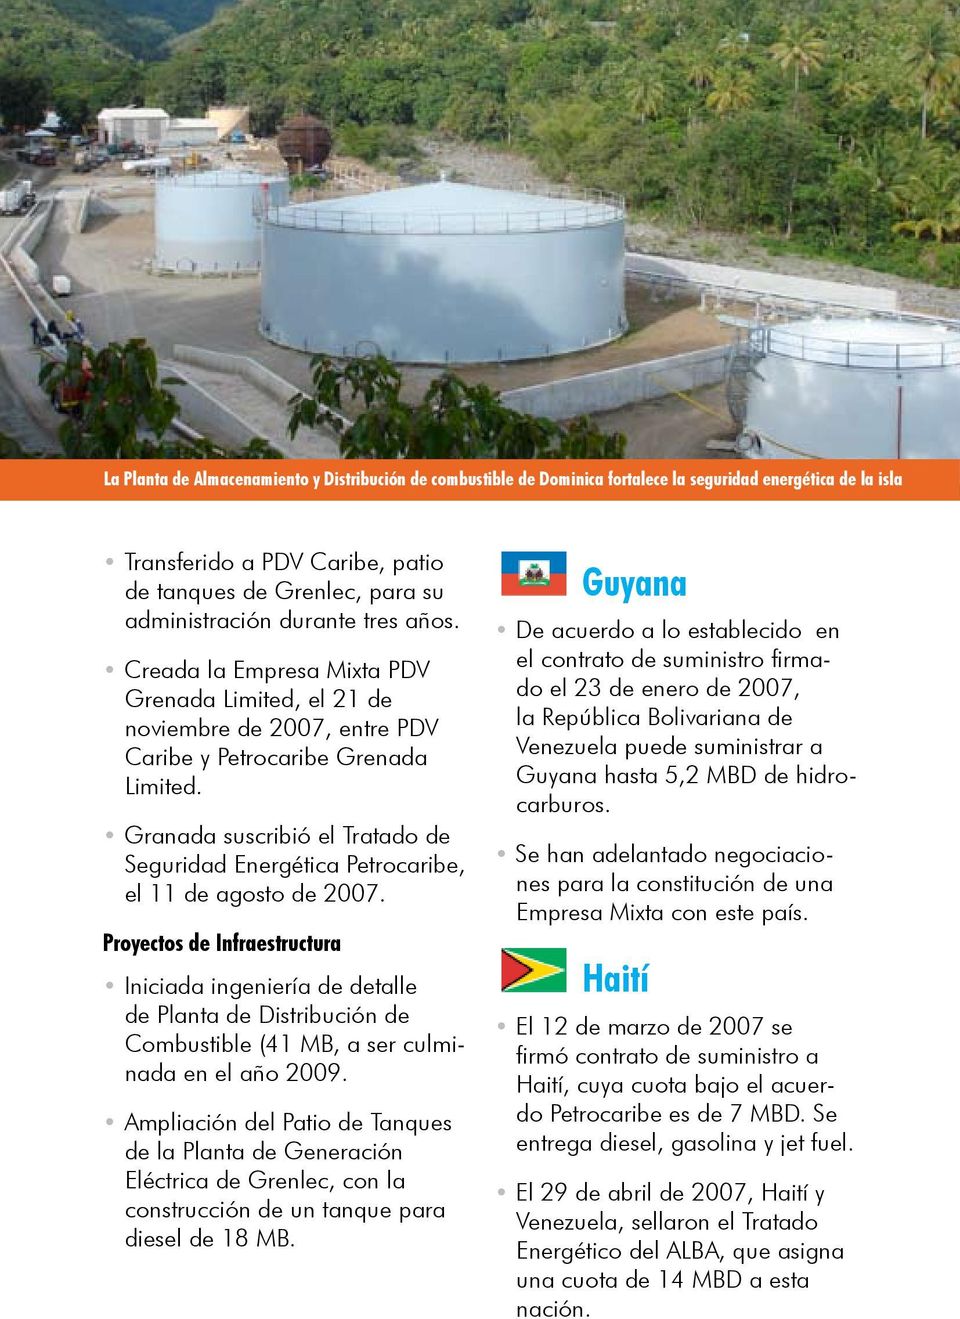 Granada suscribió el Tratado de Seguridad Energética Petrocaribe, el 11 de agosto de 2007.